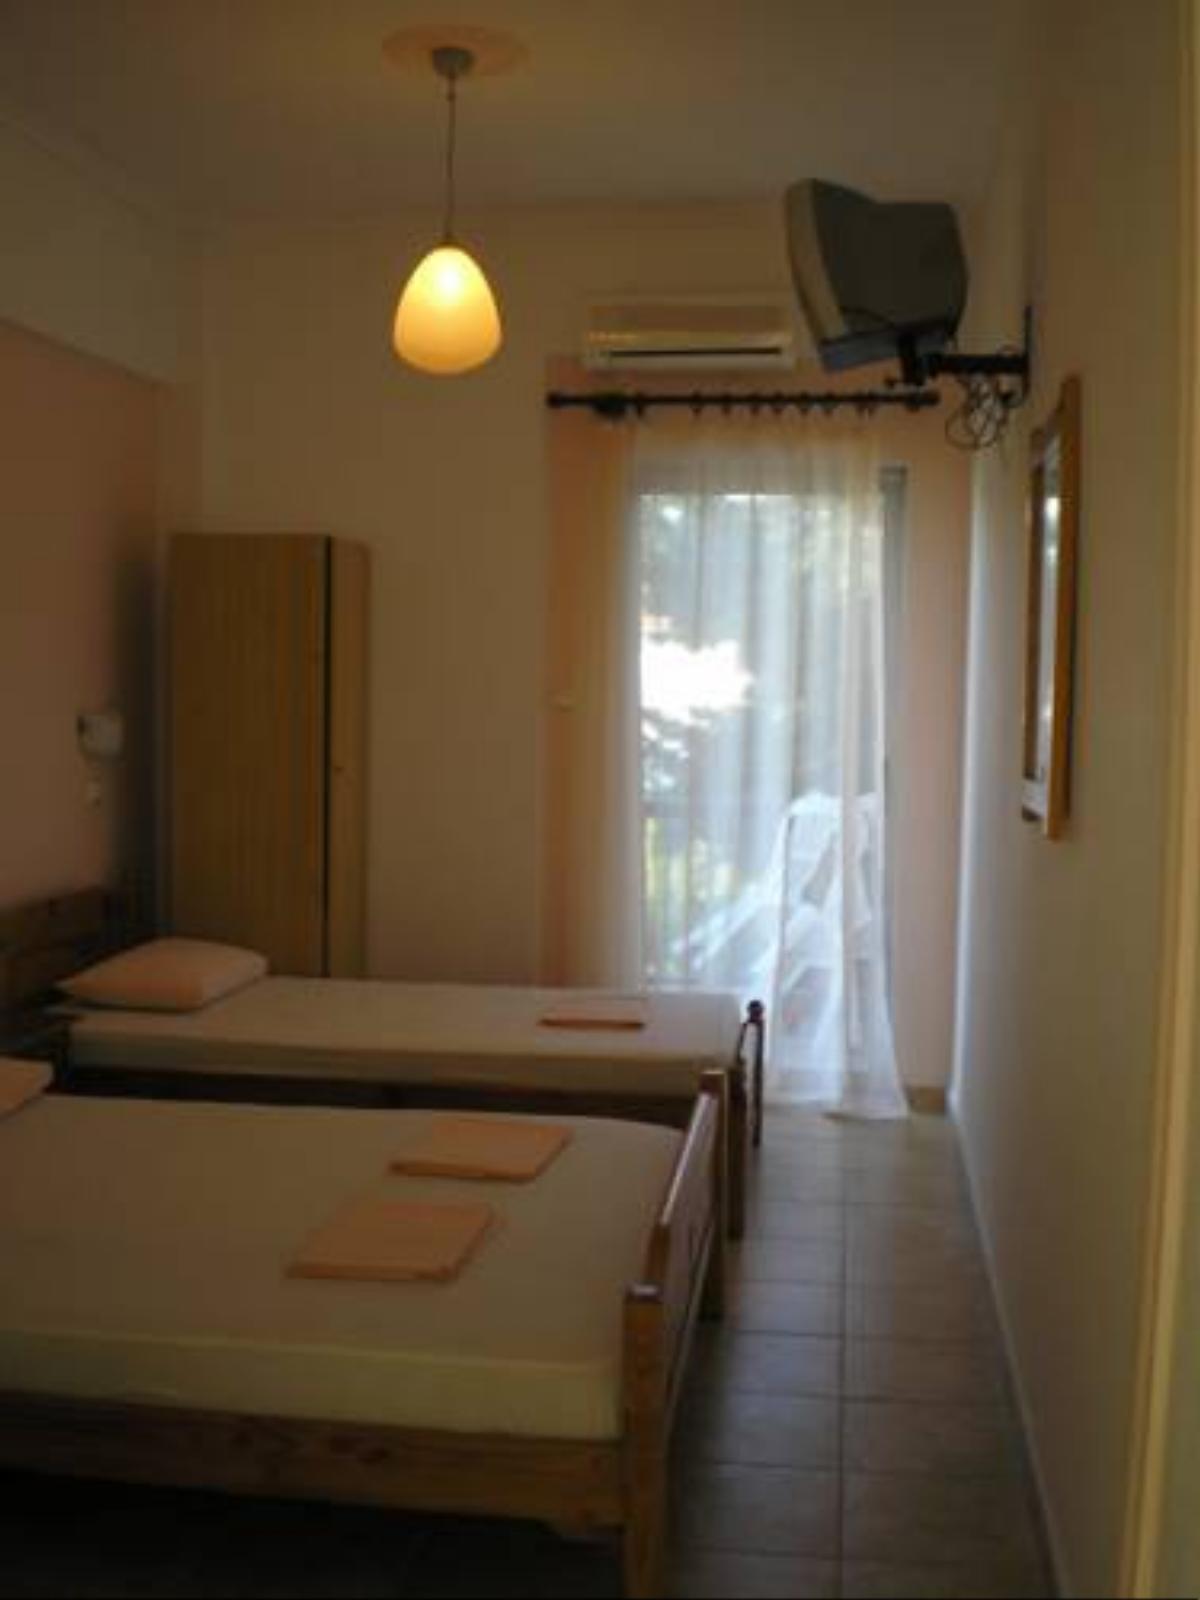 Apartments Alexandrakis Hotel Asprovalta Greece